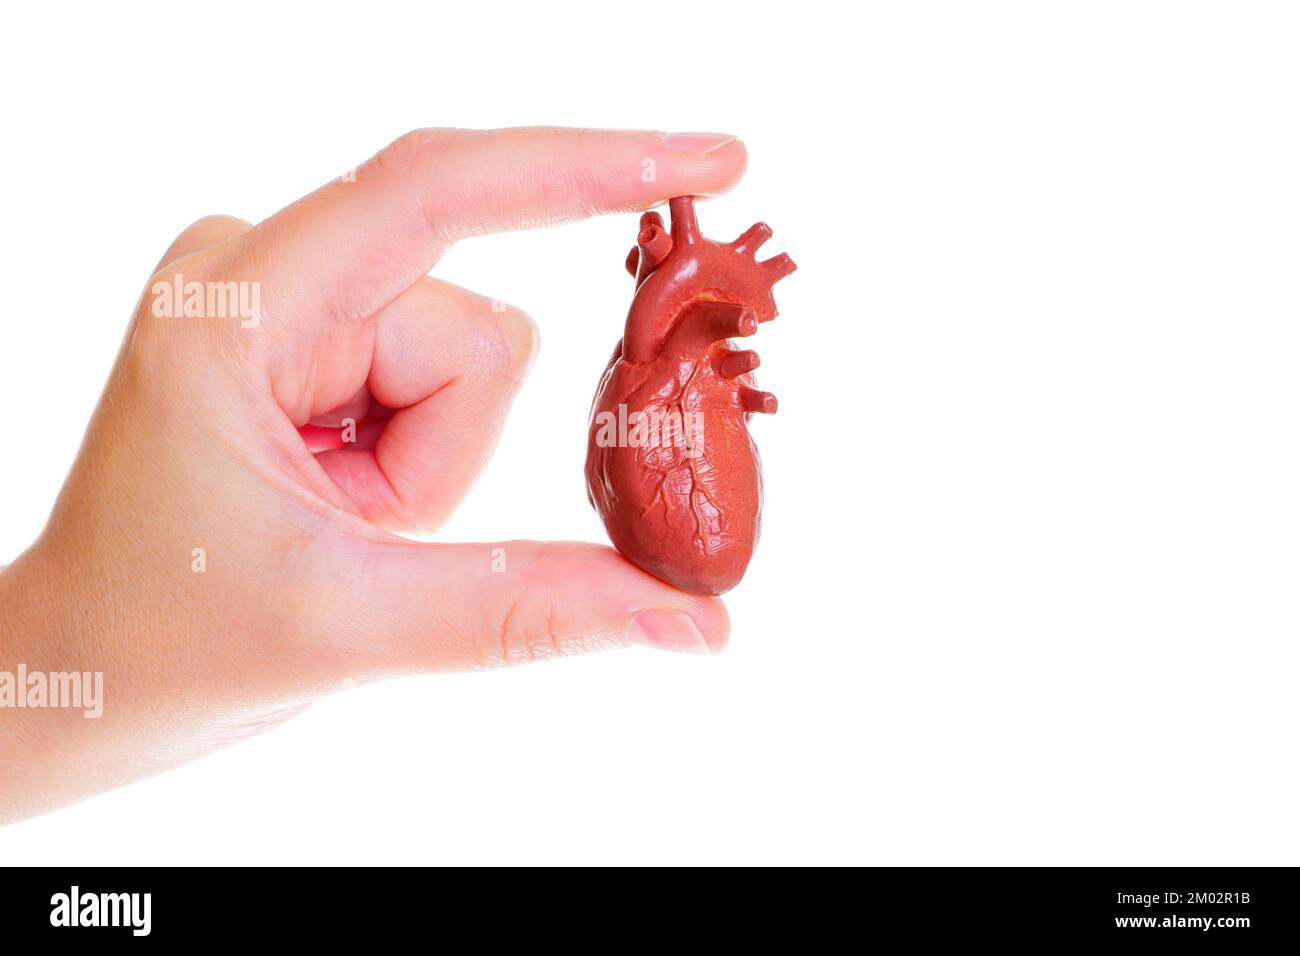 Copia anatomica in miniatura di un cuore umano in mano isolato su sfondo bianco. Apprendimento con modelli anatomici. Foto Stock